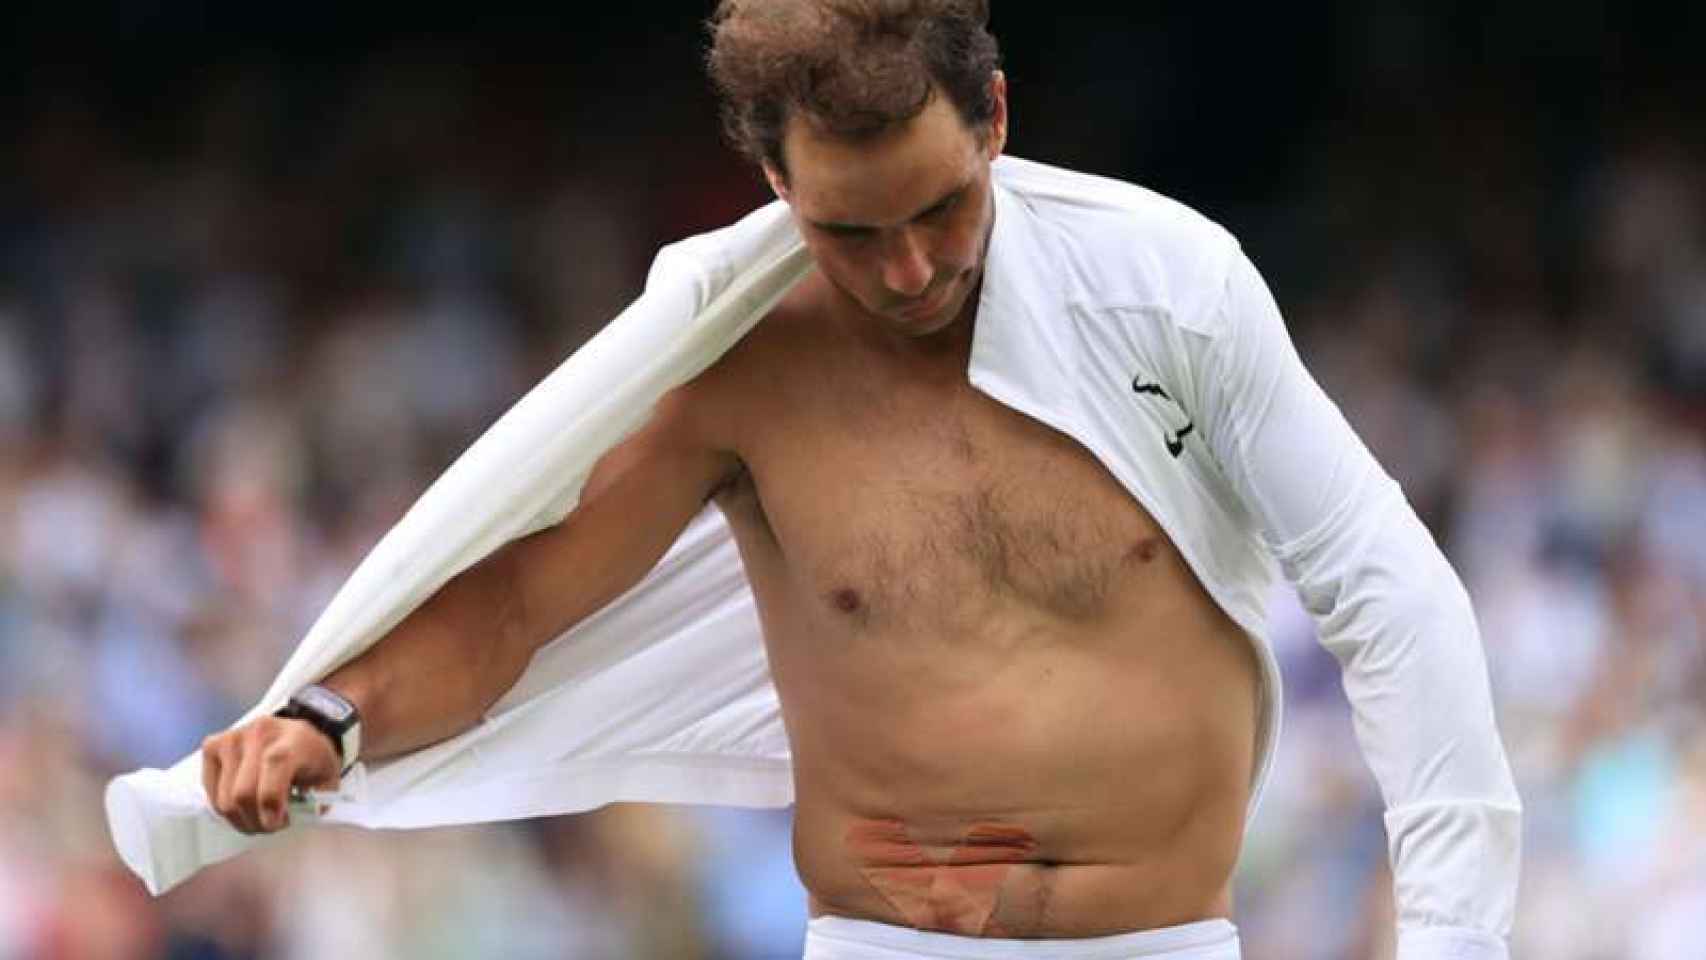 Así es la lesión de Rafa Nadal en el abdomen que le ha obligado a retirarse en Wimbledon thumbnail